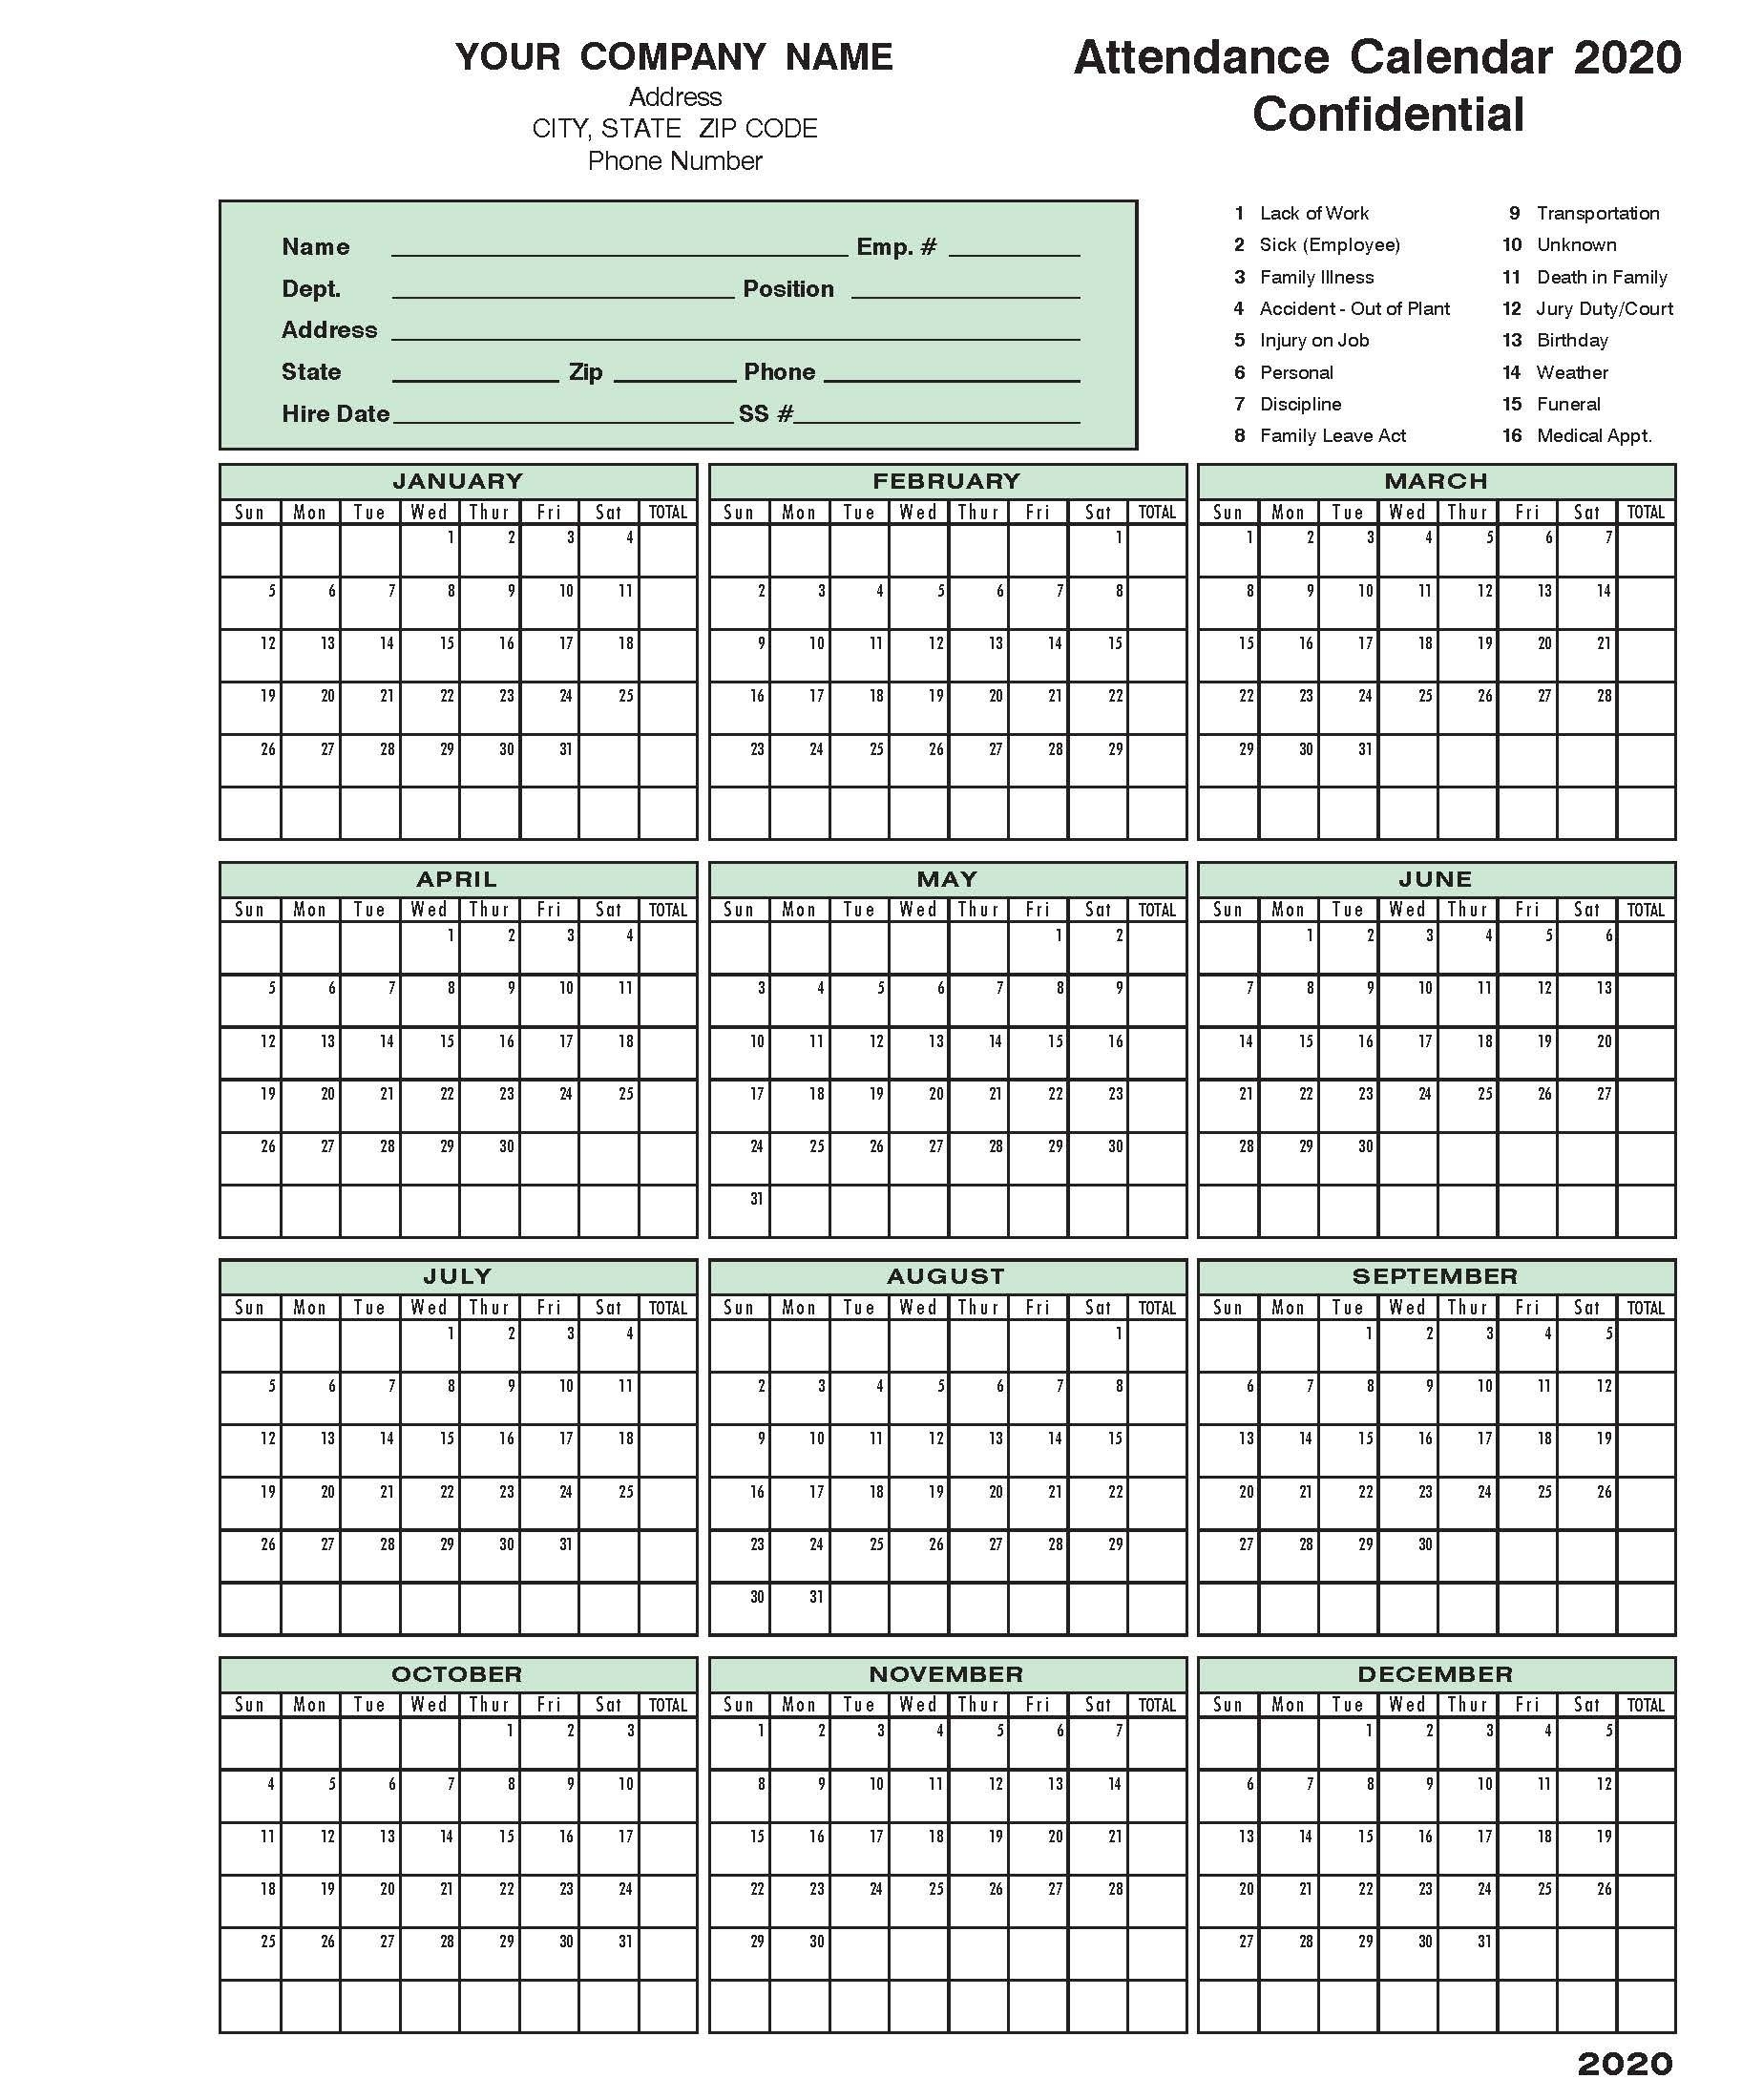 2020 Attendance Calendar In 2020 | Calendar 2020, Excel with regard to Free 2020 Employee Attendance Calendar